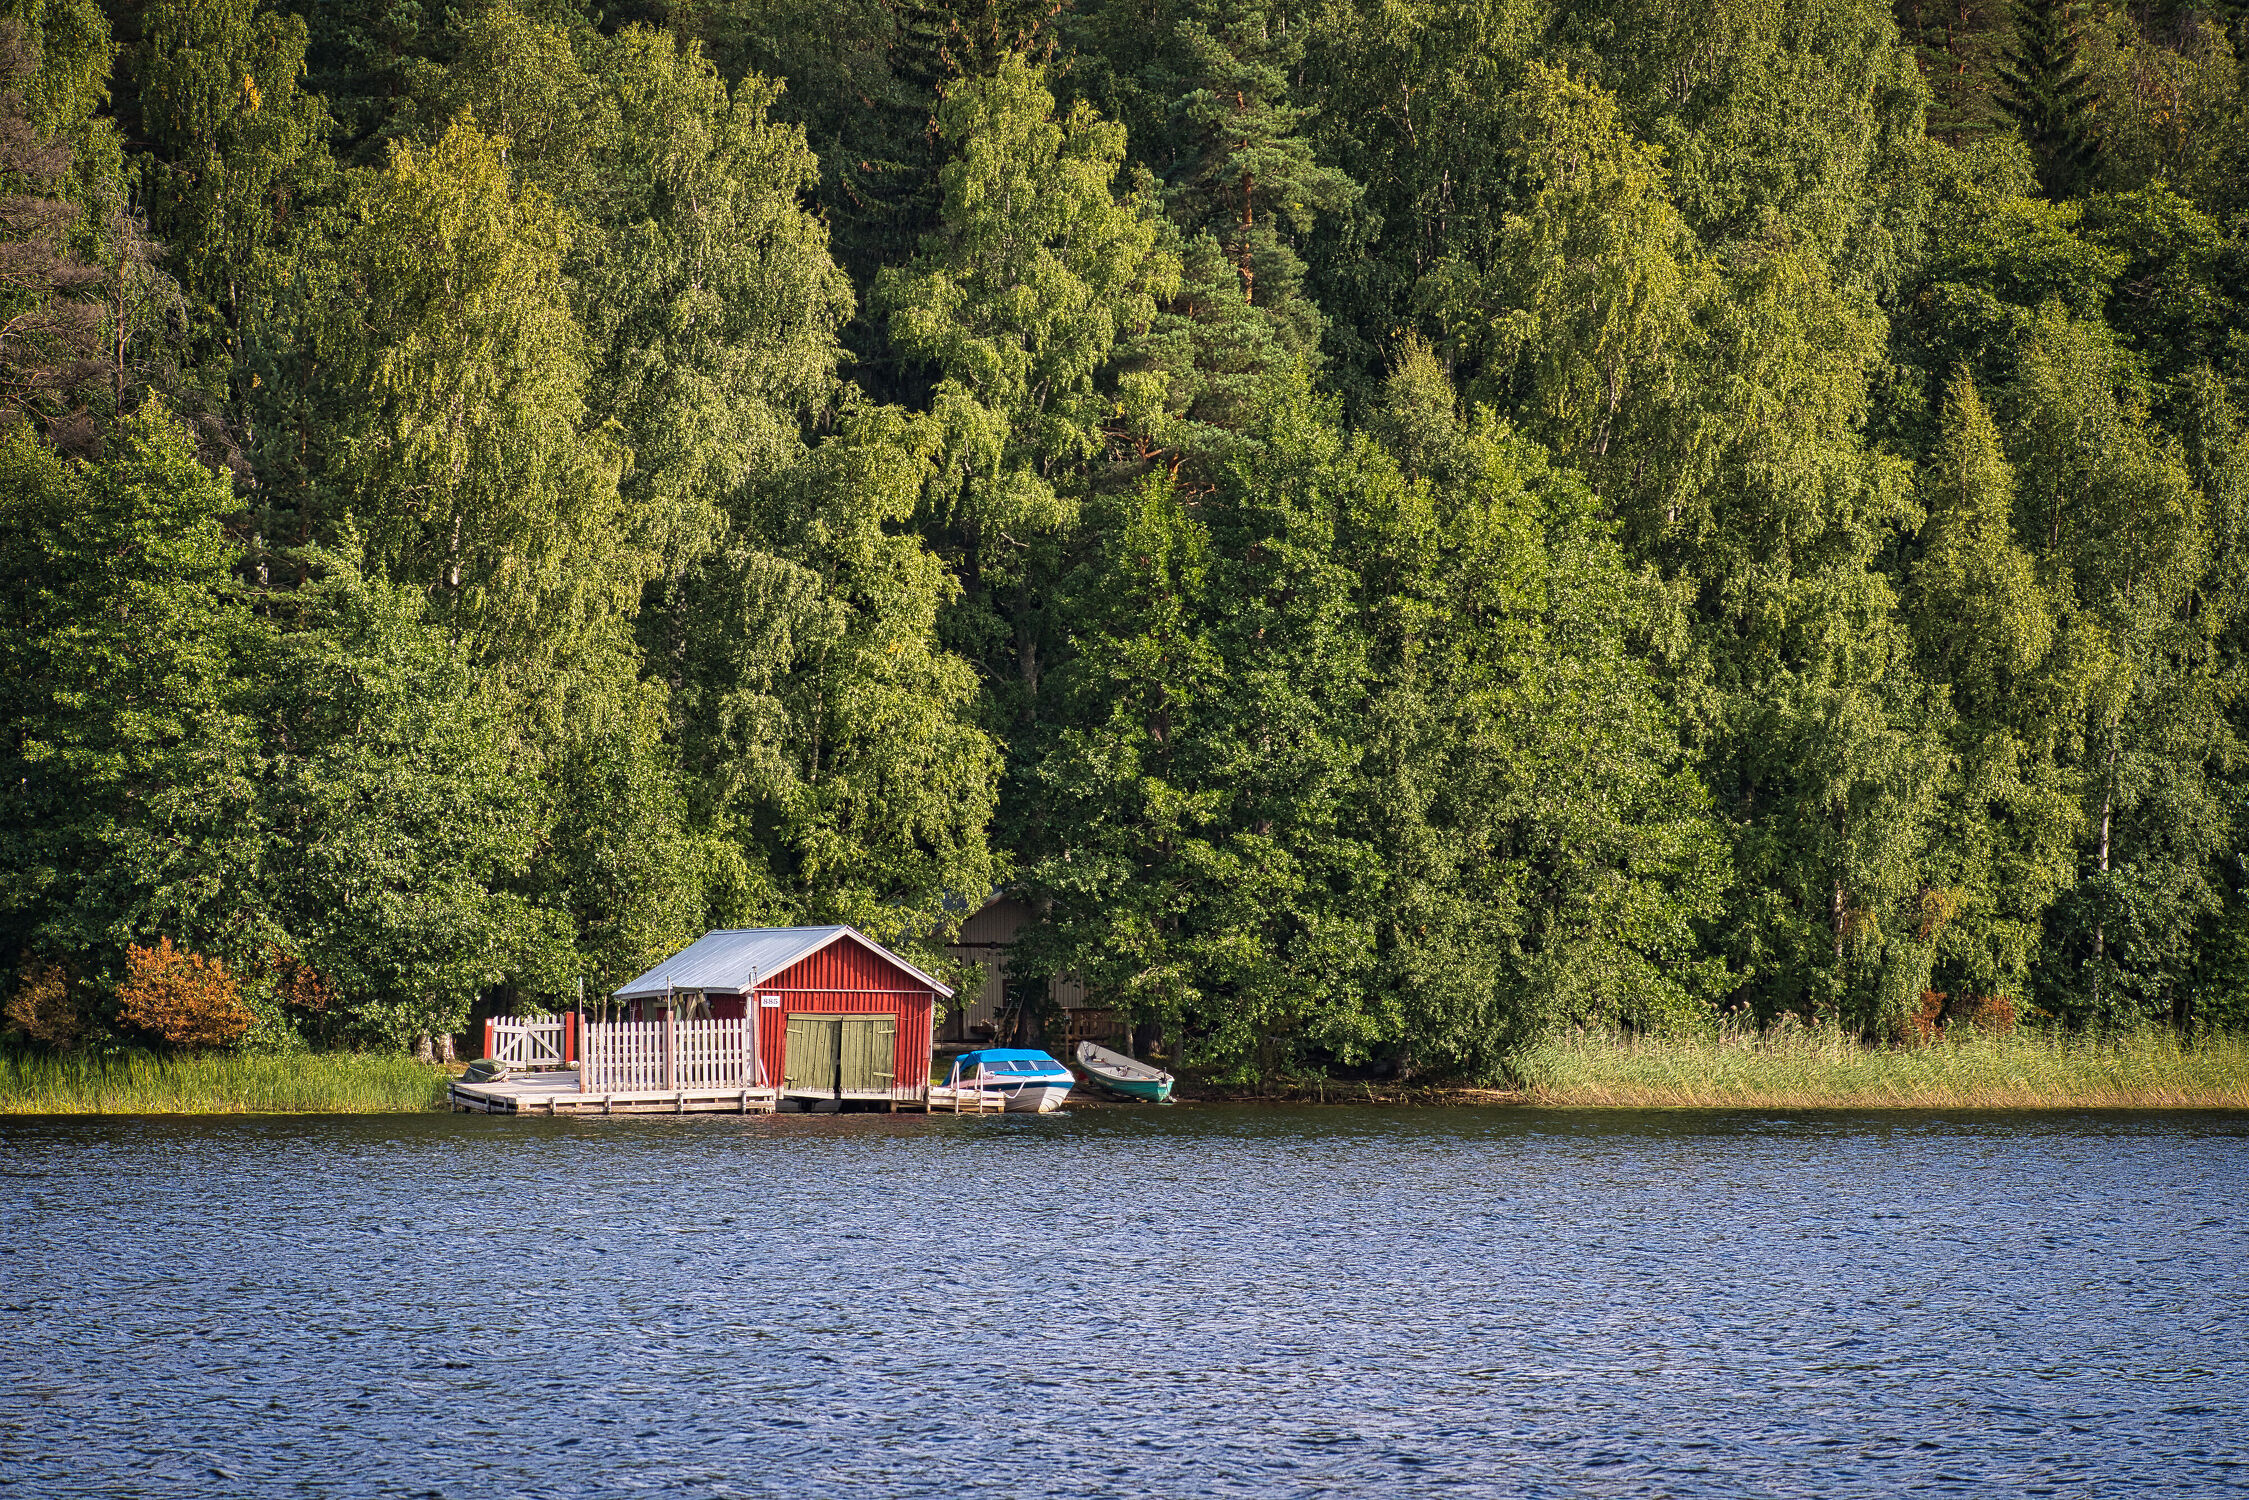 Bild mit Grün, Bäume, Seen, Blau, Wald, Boote, Haus, Bootsanleger, Bootshaus, Finnland